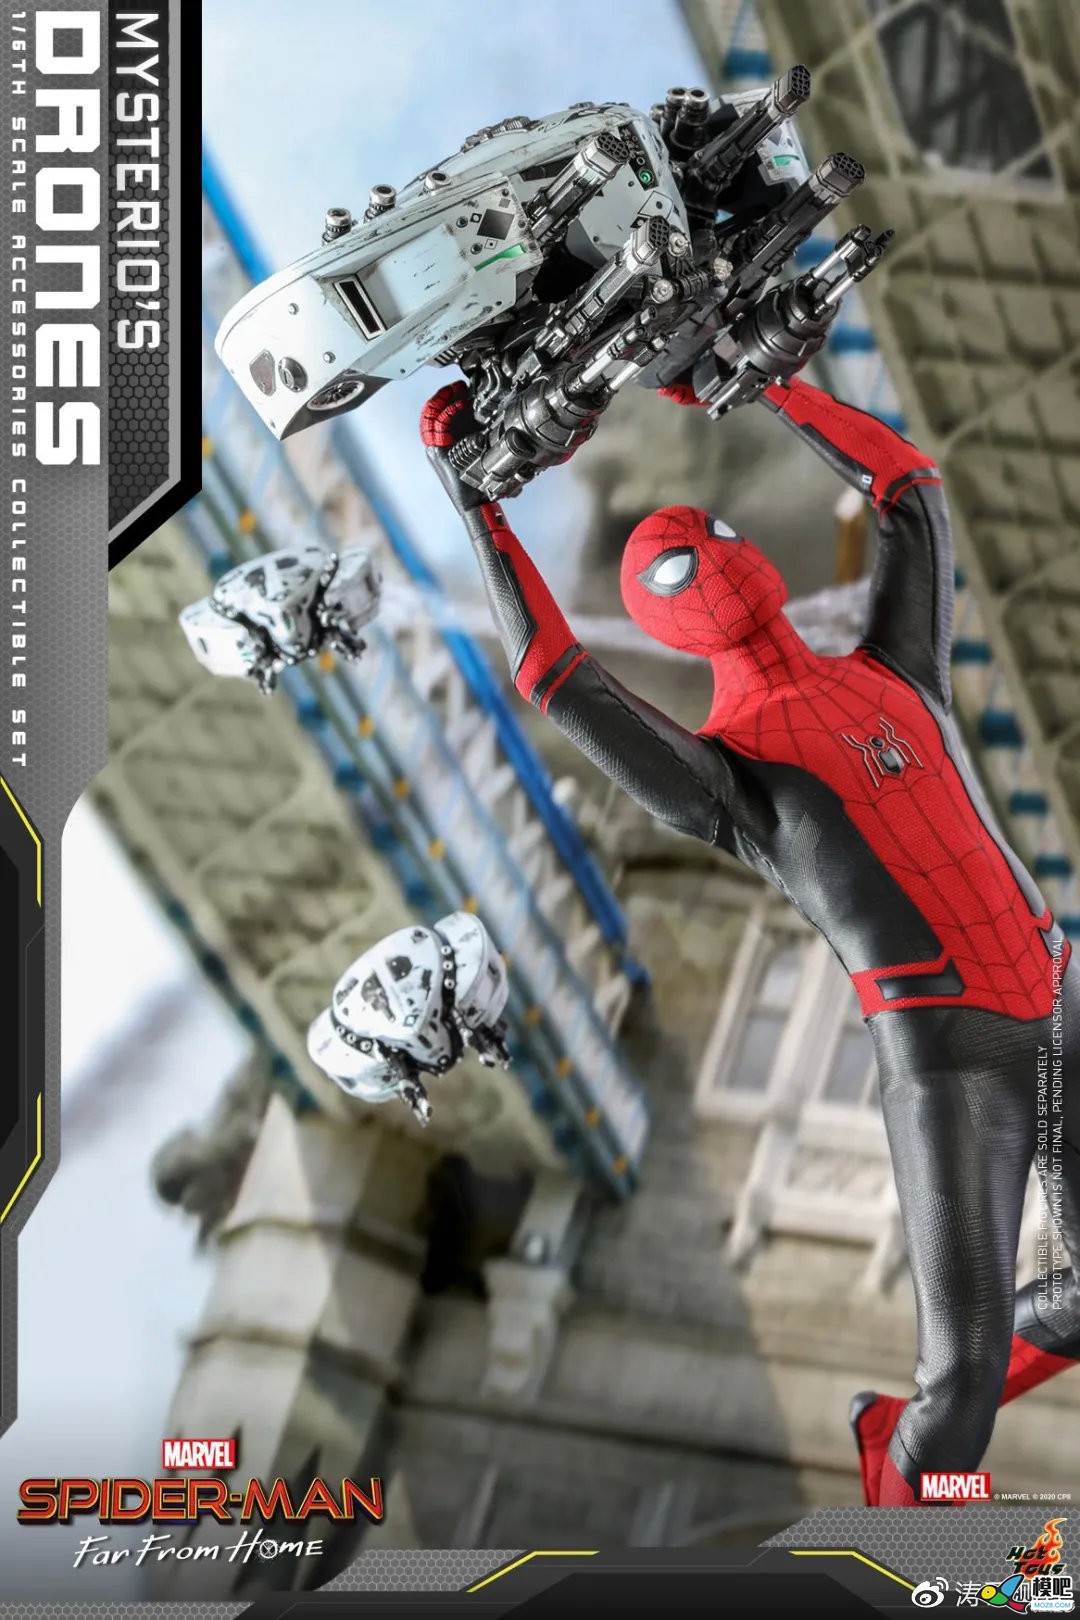 《蜘蛛侠: 英雄远征》中的无人机套装 无人机 作者:admin 7777 